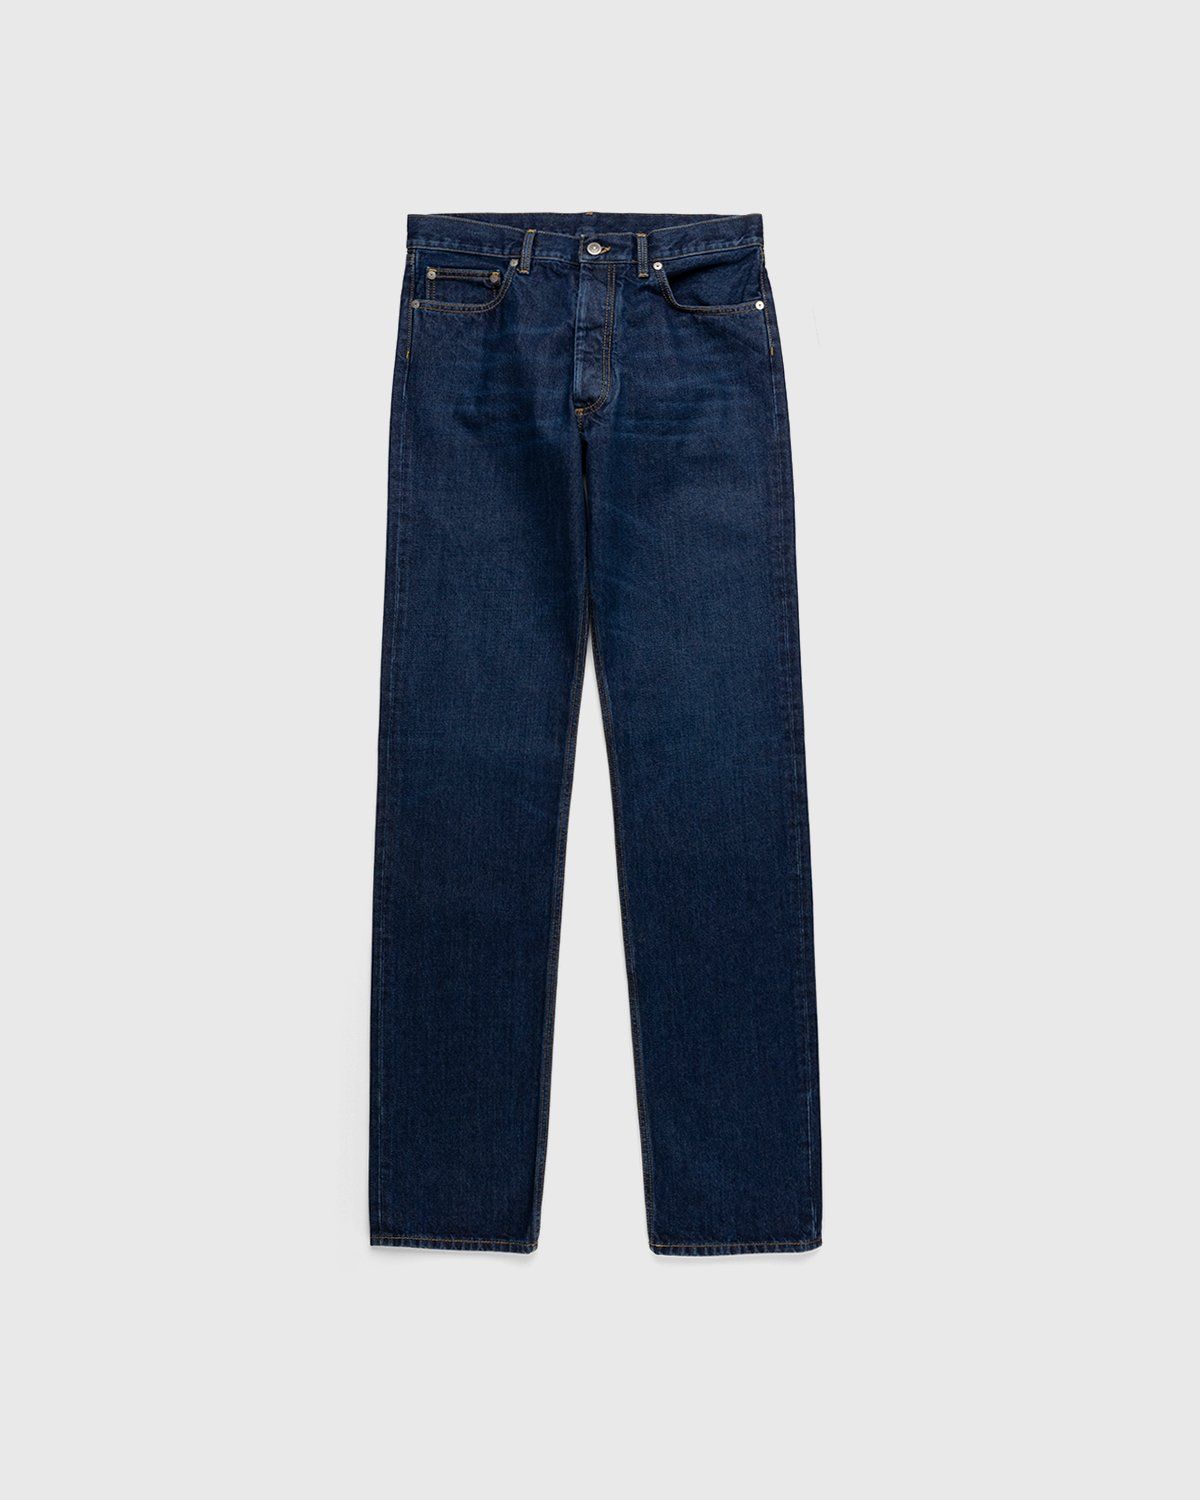 Maison Margiela – 5 Pocket Jeans Blue - Pants - Blue - Image 1